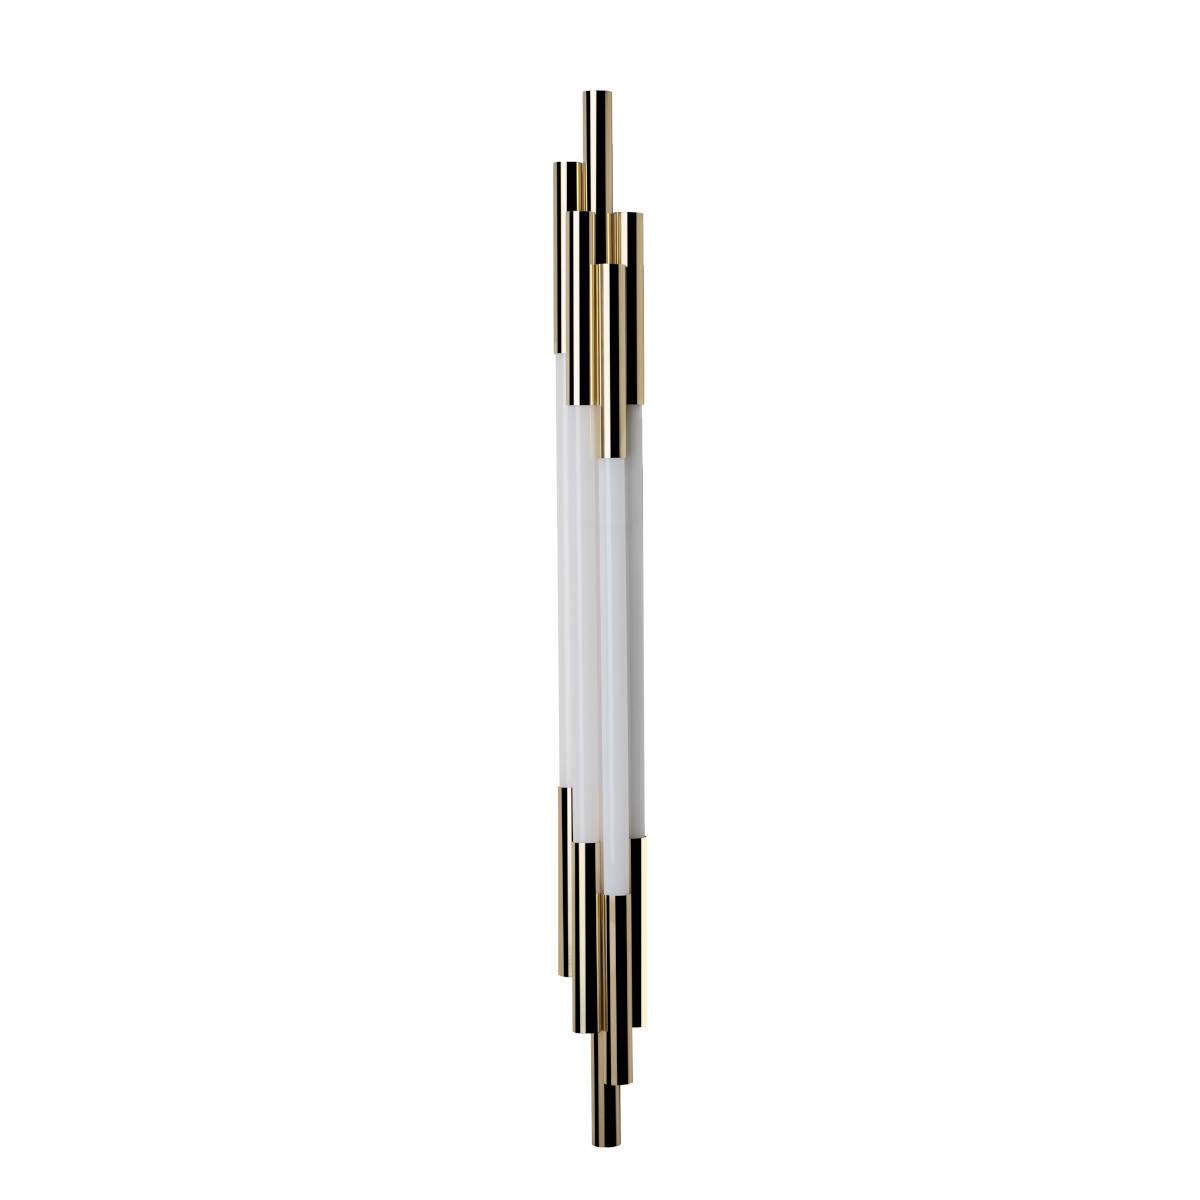 DCW :: Lampa ścienna / kinkiet Org biało-złoty wys. 105 cm